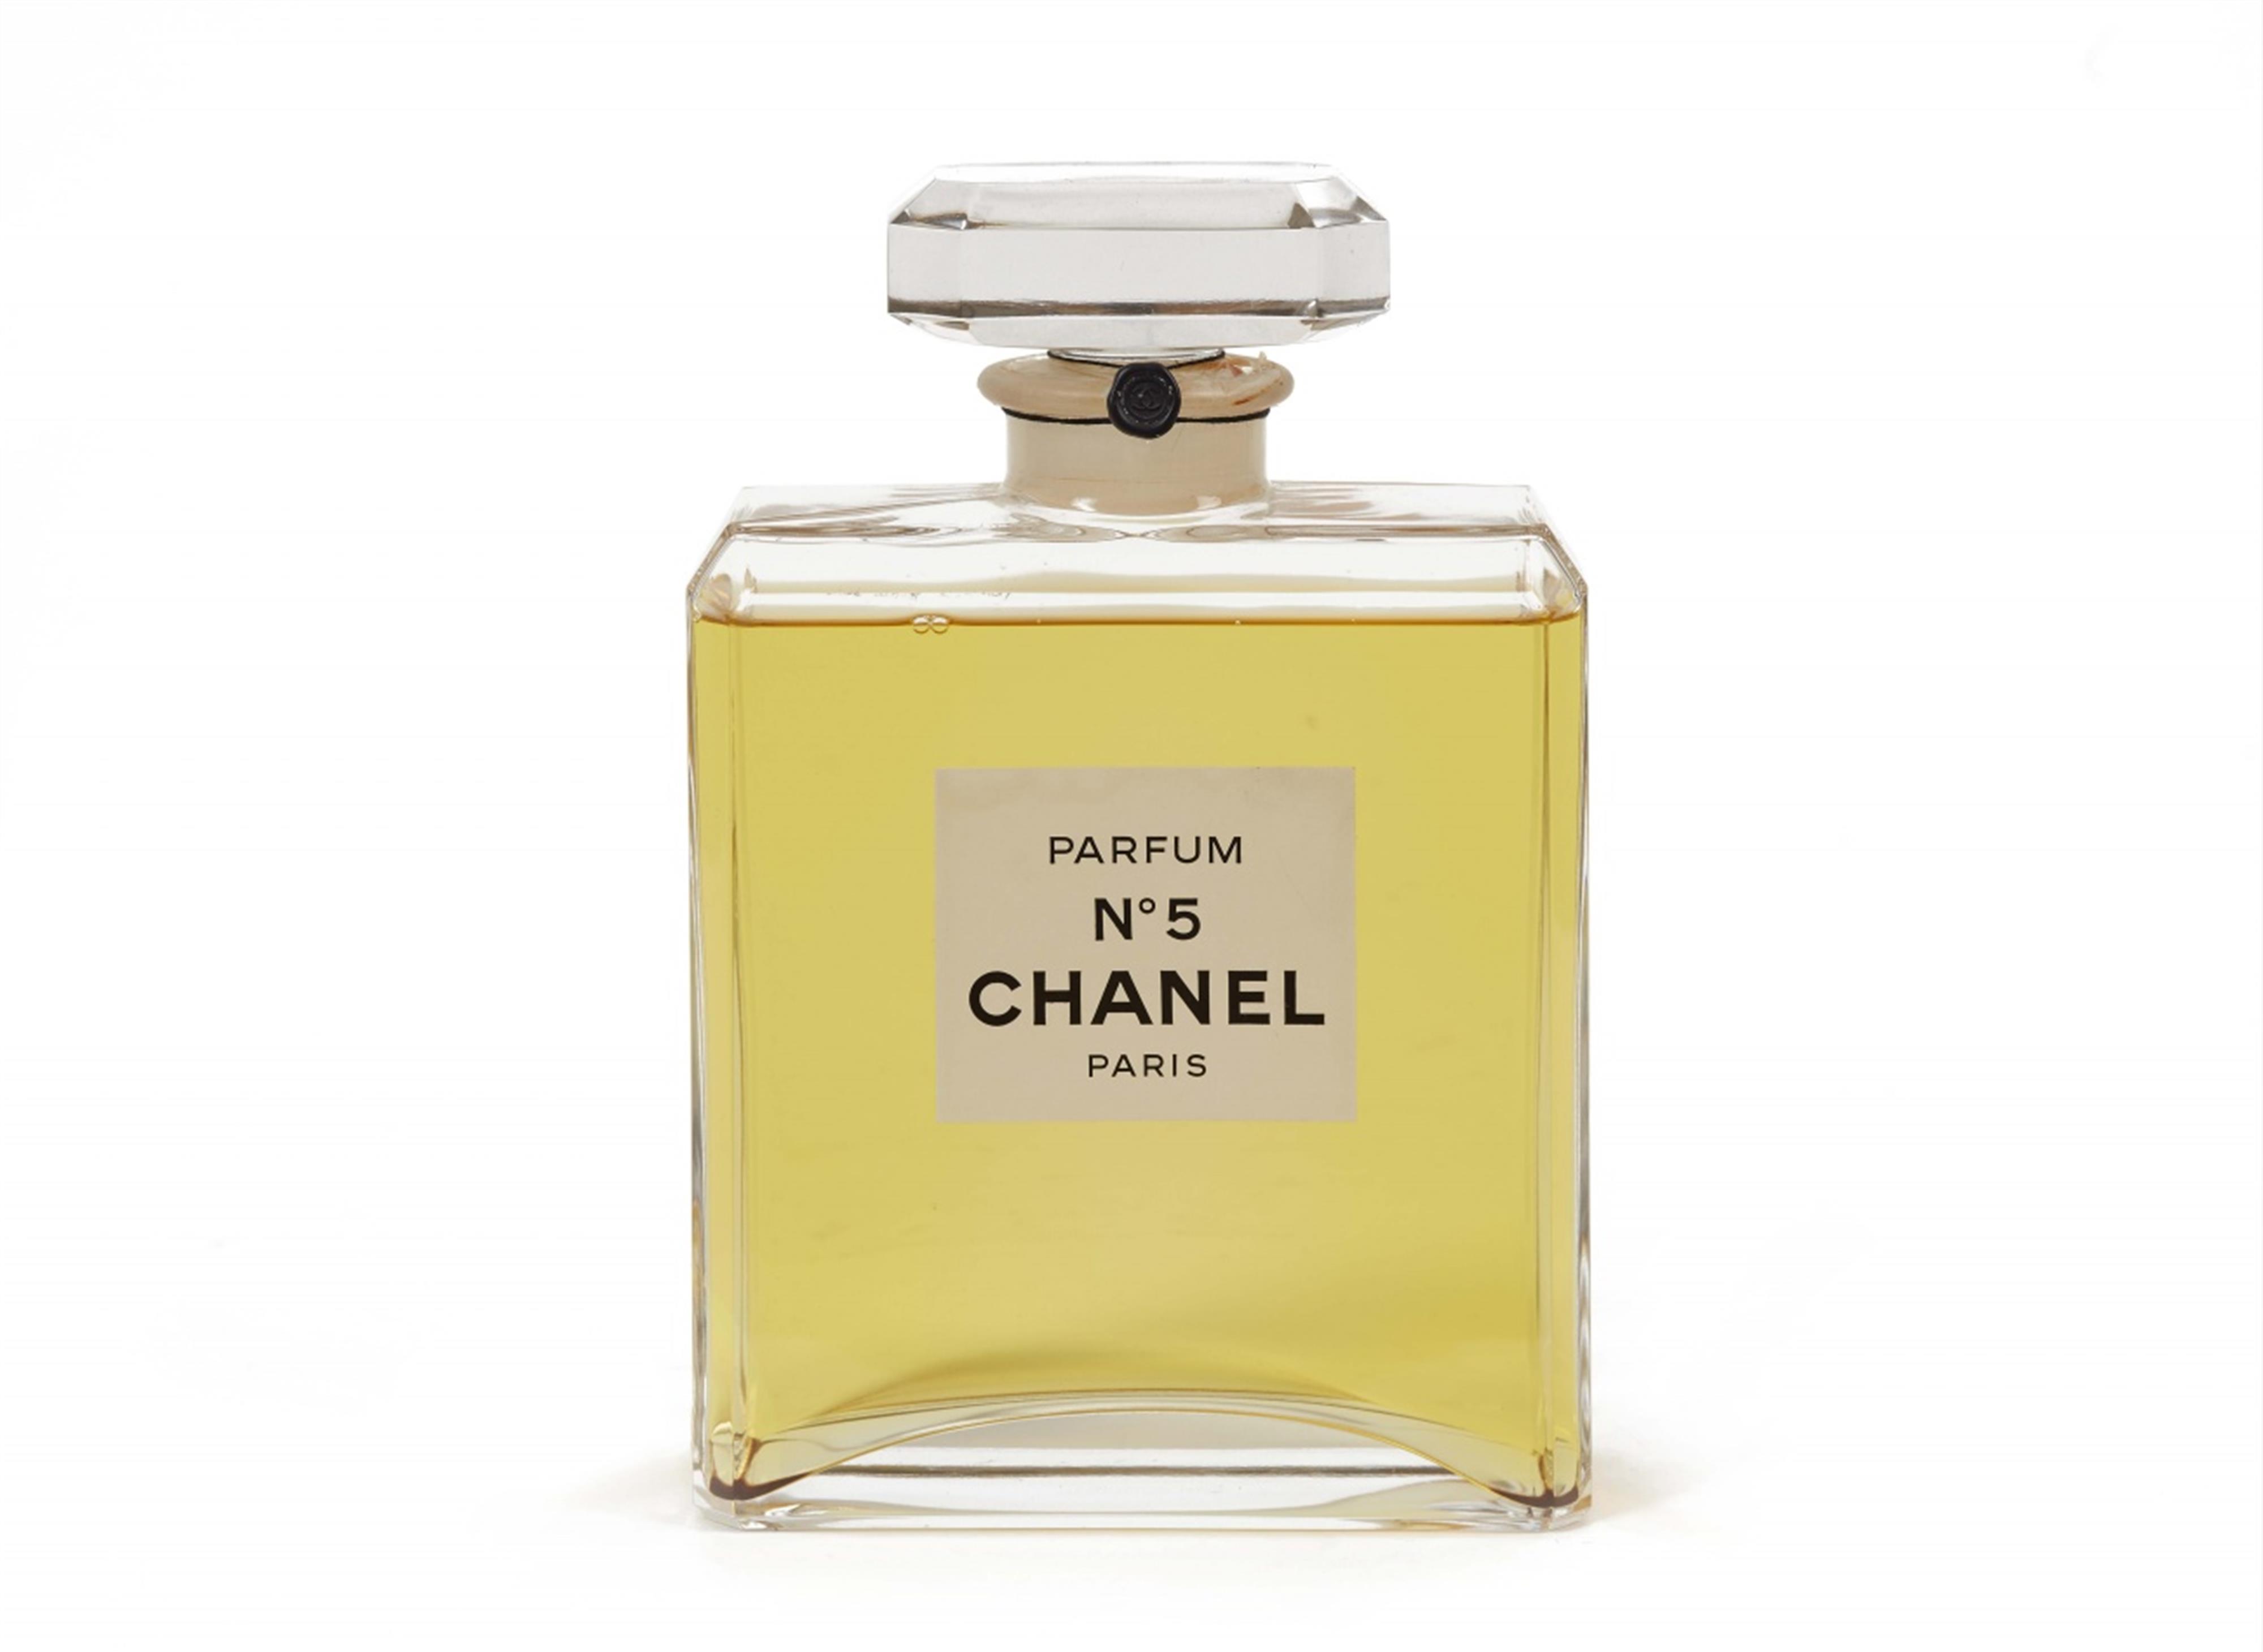 A Chanel Paris No 5 factice Lot 18